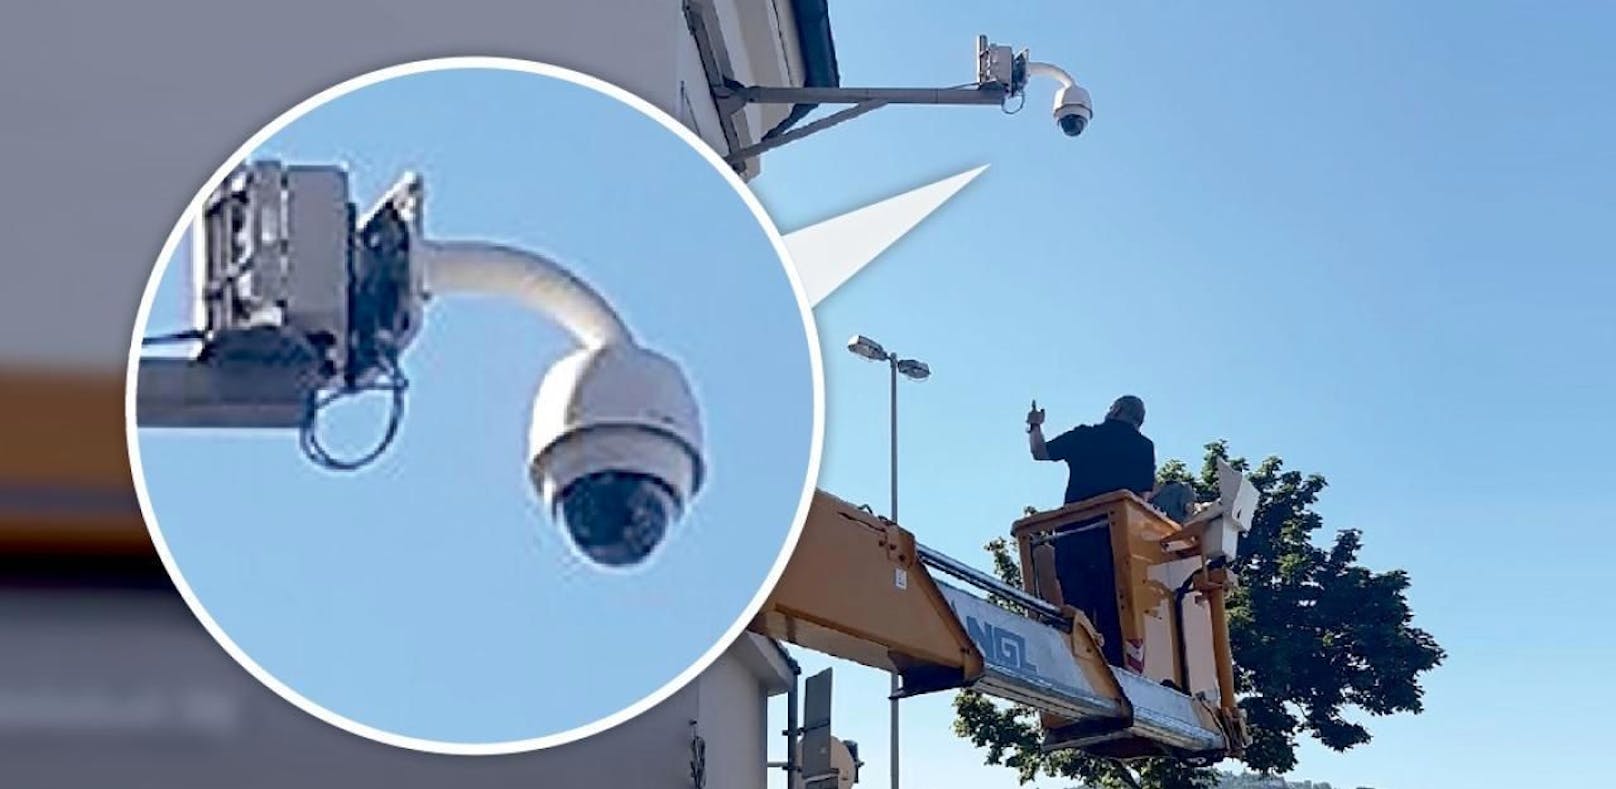 In der Linzer Altstadt wurden mehrere Kameras installiert. 